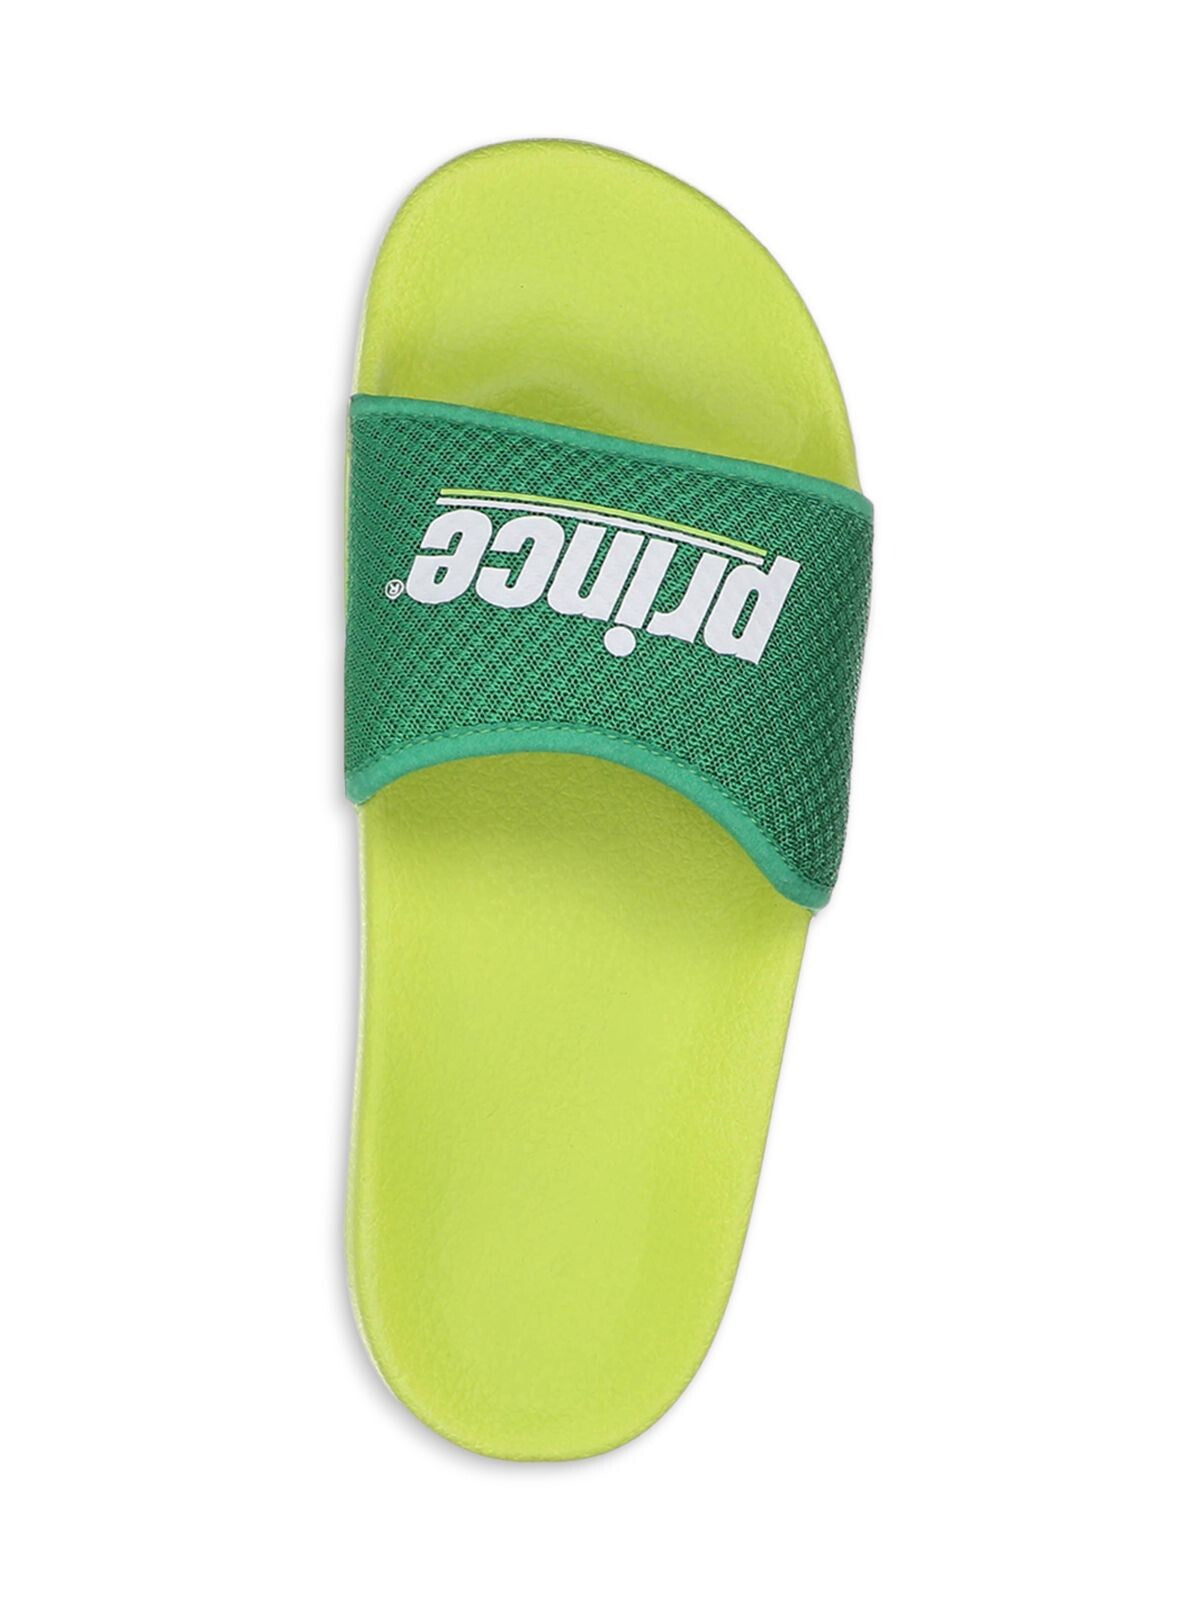 PRINCE Womens Green Logo Comfort Prism Round Toe Platform Slip On Slide Sandals Shoes 5